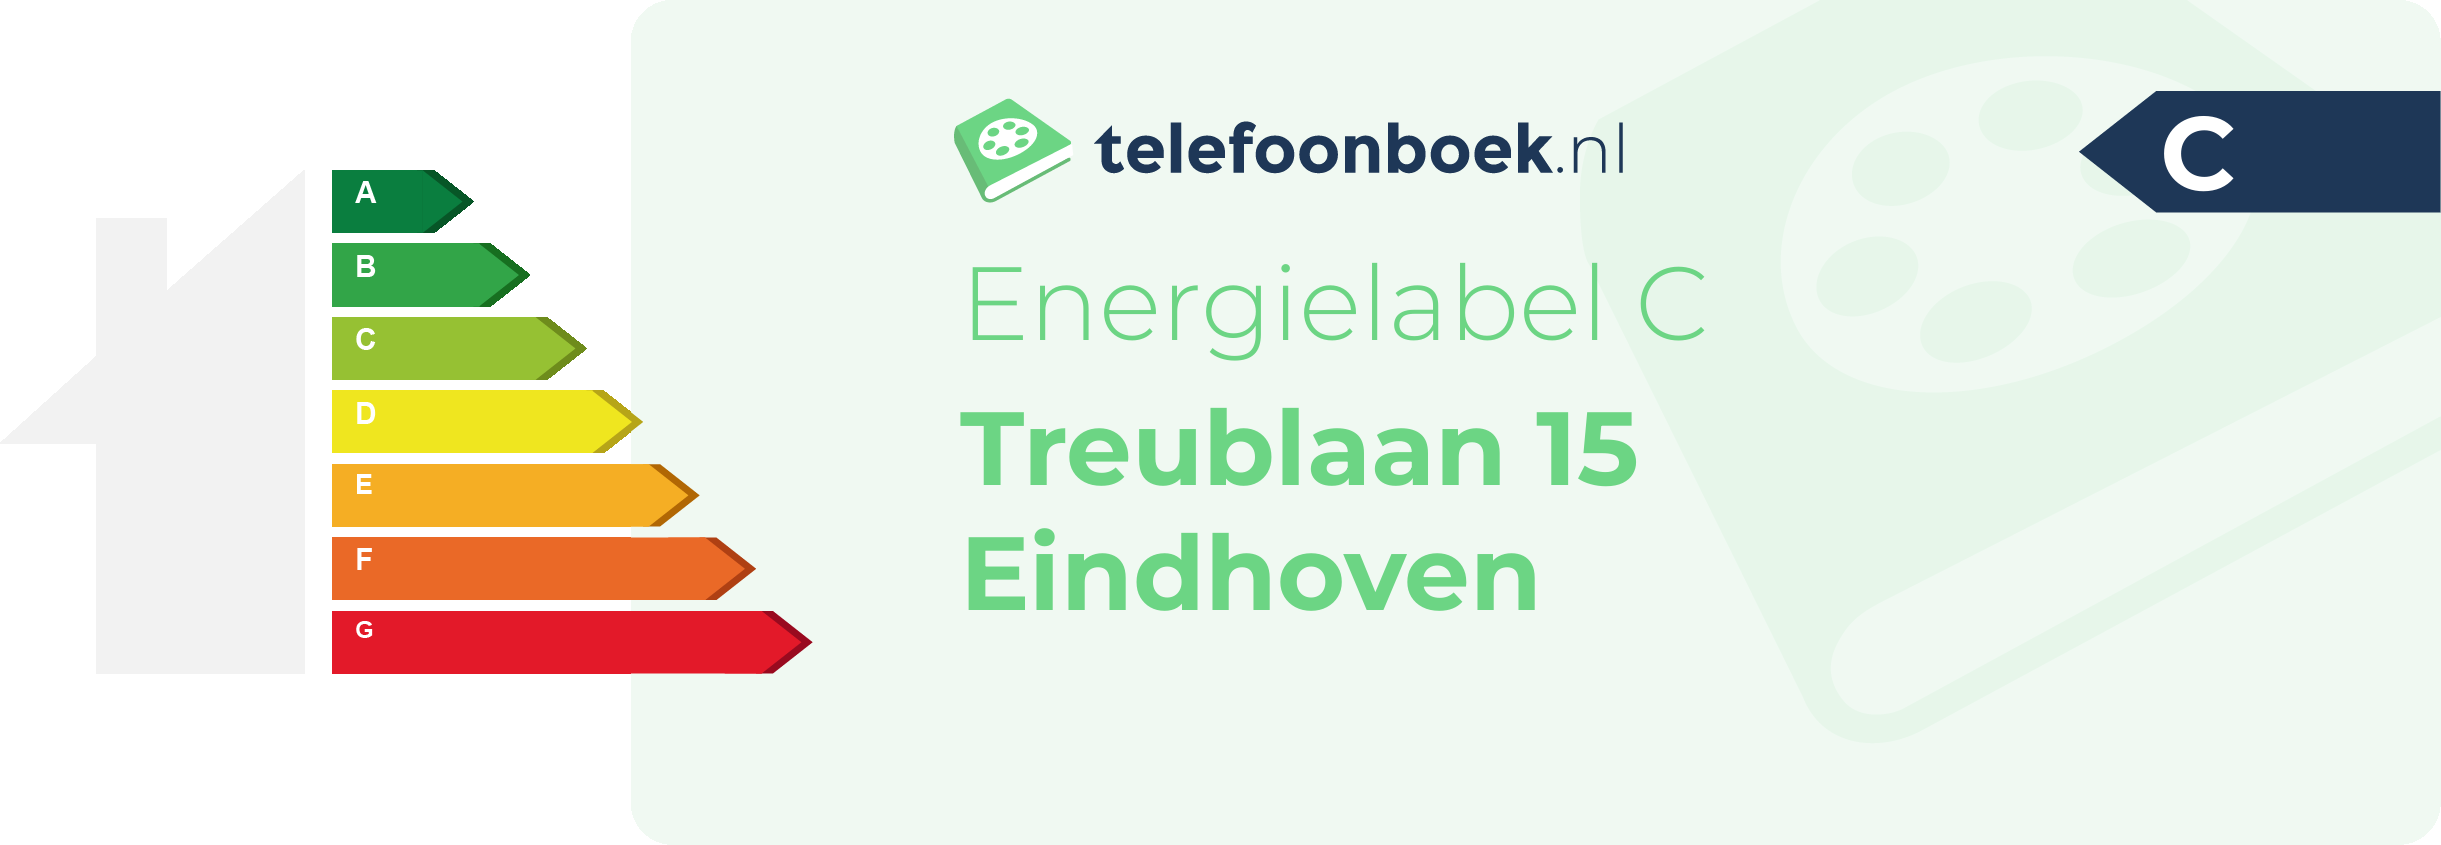 Energielabel Treublaan 15 Eindhoven